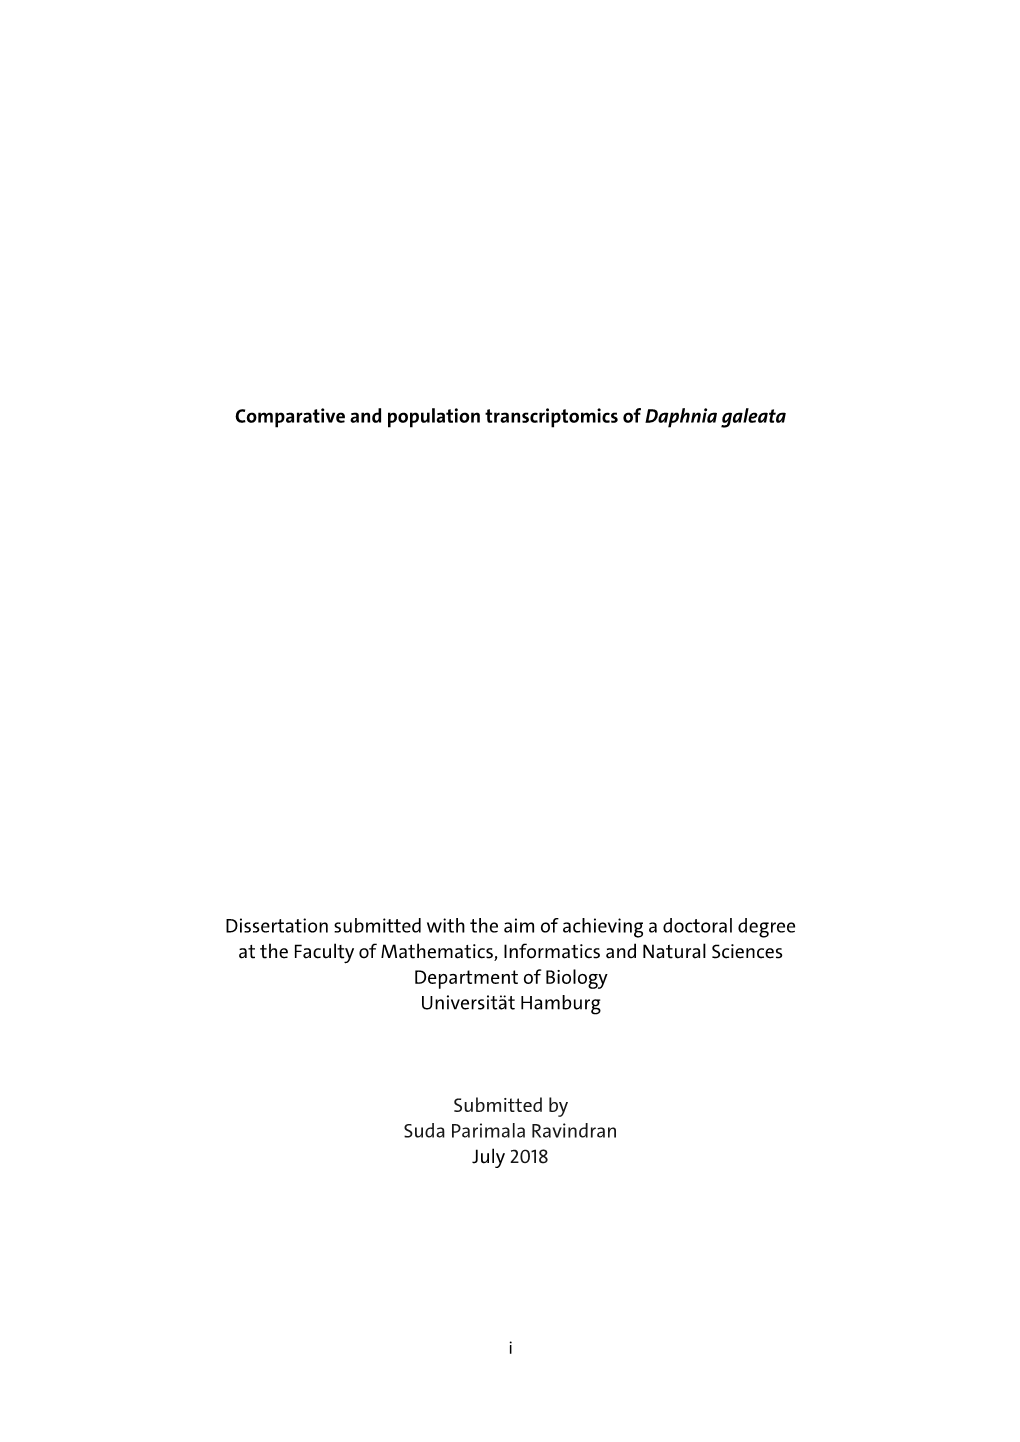 Comparative and Population Transcriptomics of Daphnia Galeata